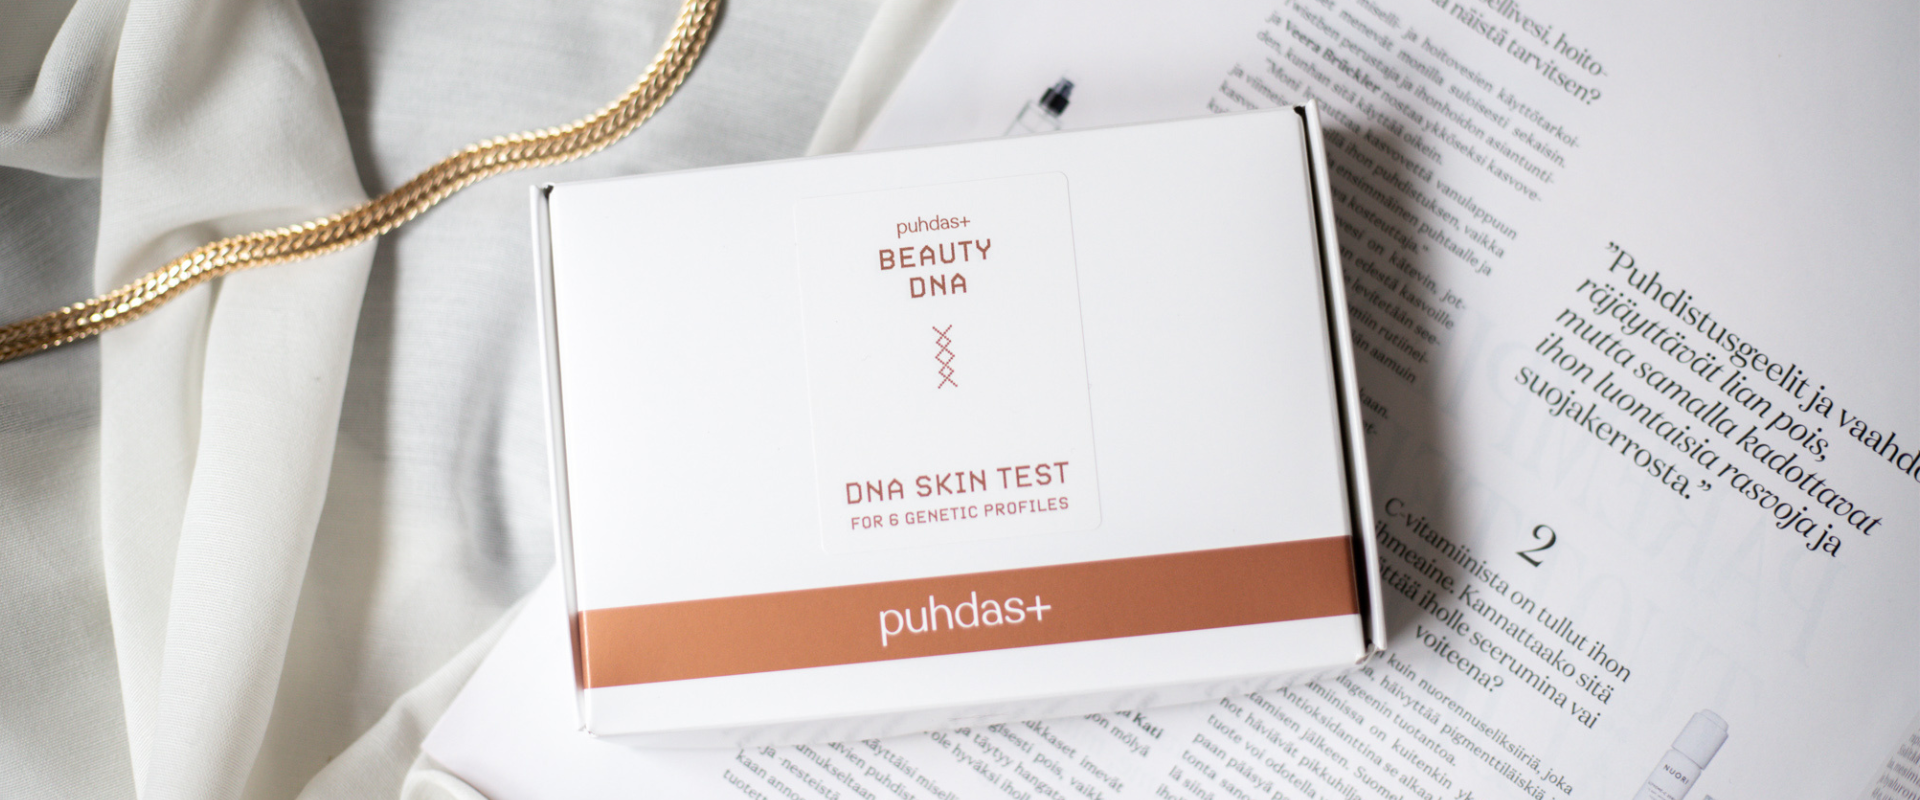 Puhdas+ Beauty DNA testi mullistaa käsityksen ihonhoidosta